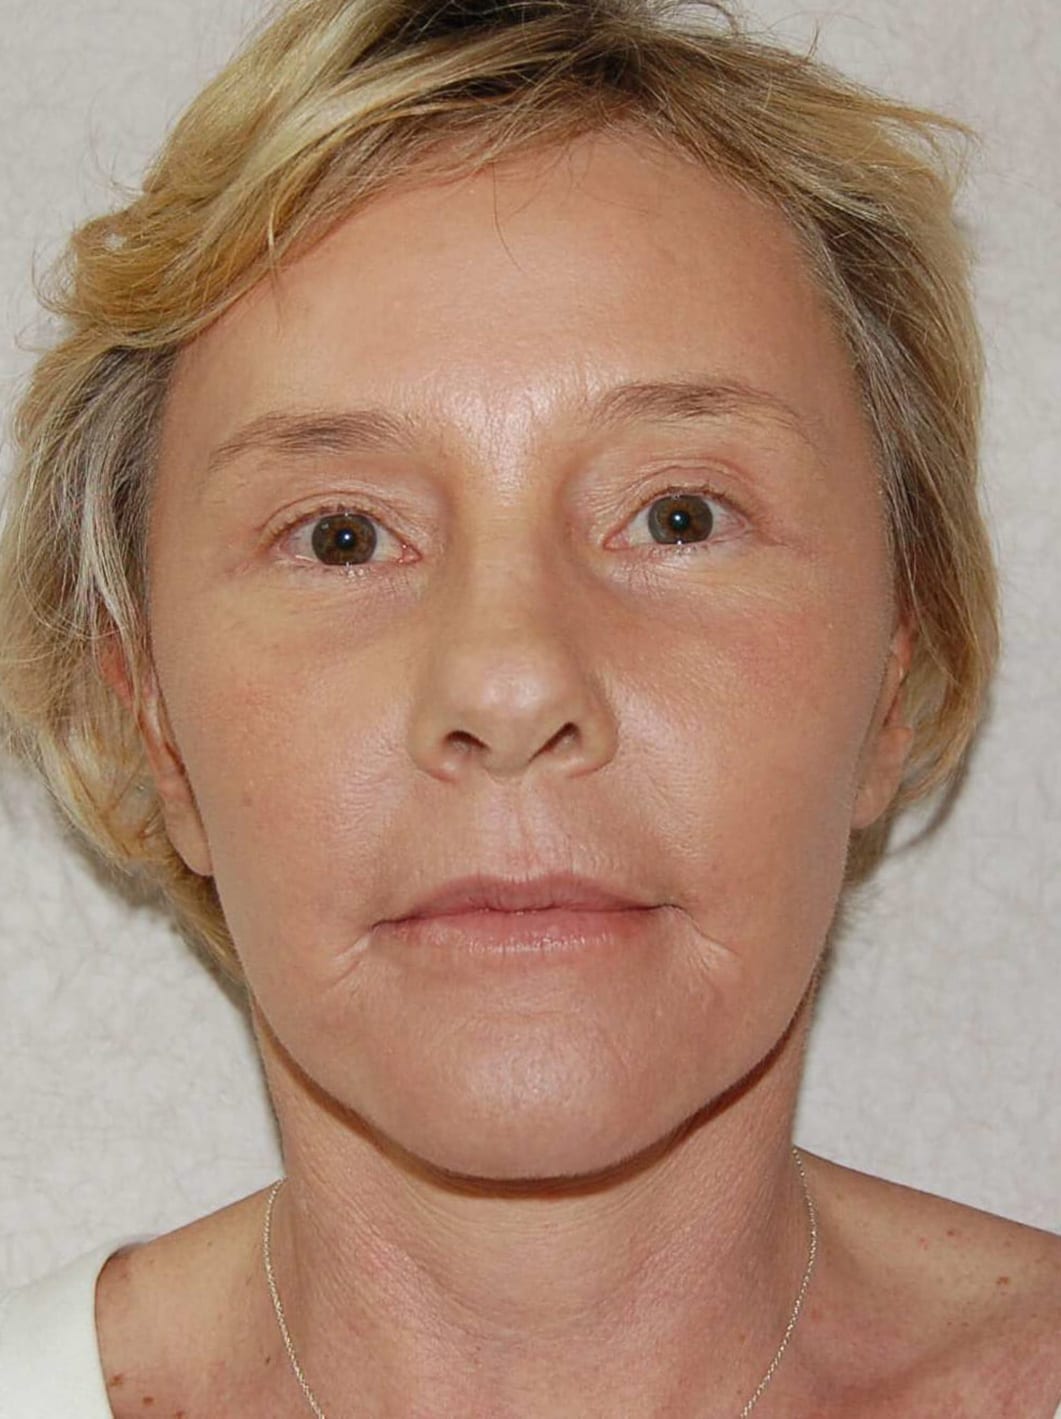 Facial Rejuvenation Patient Photo - Case 3802 - after view